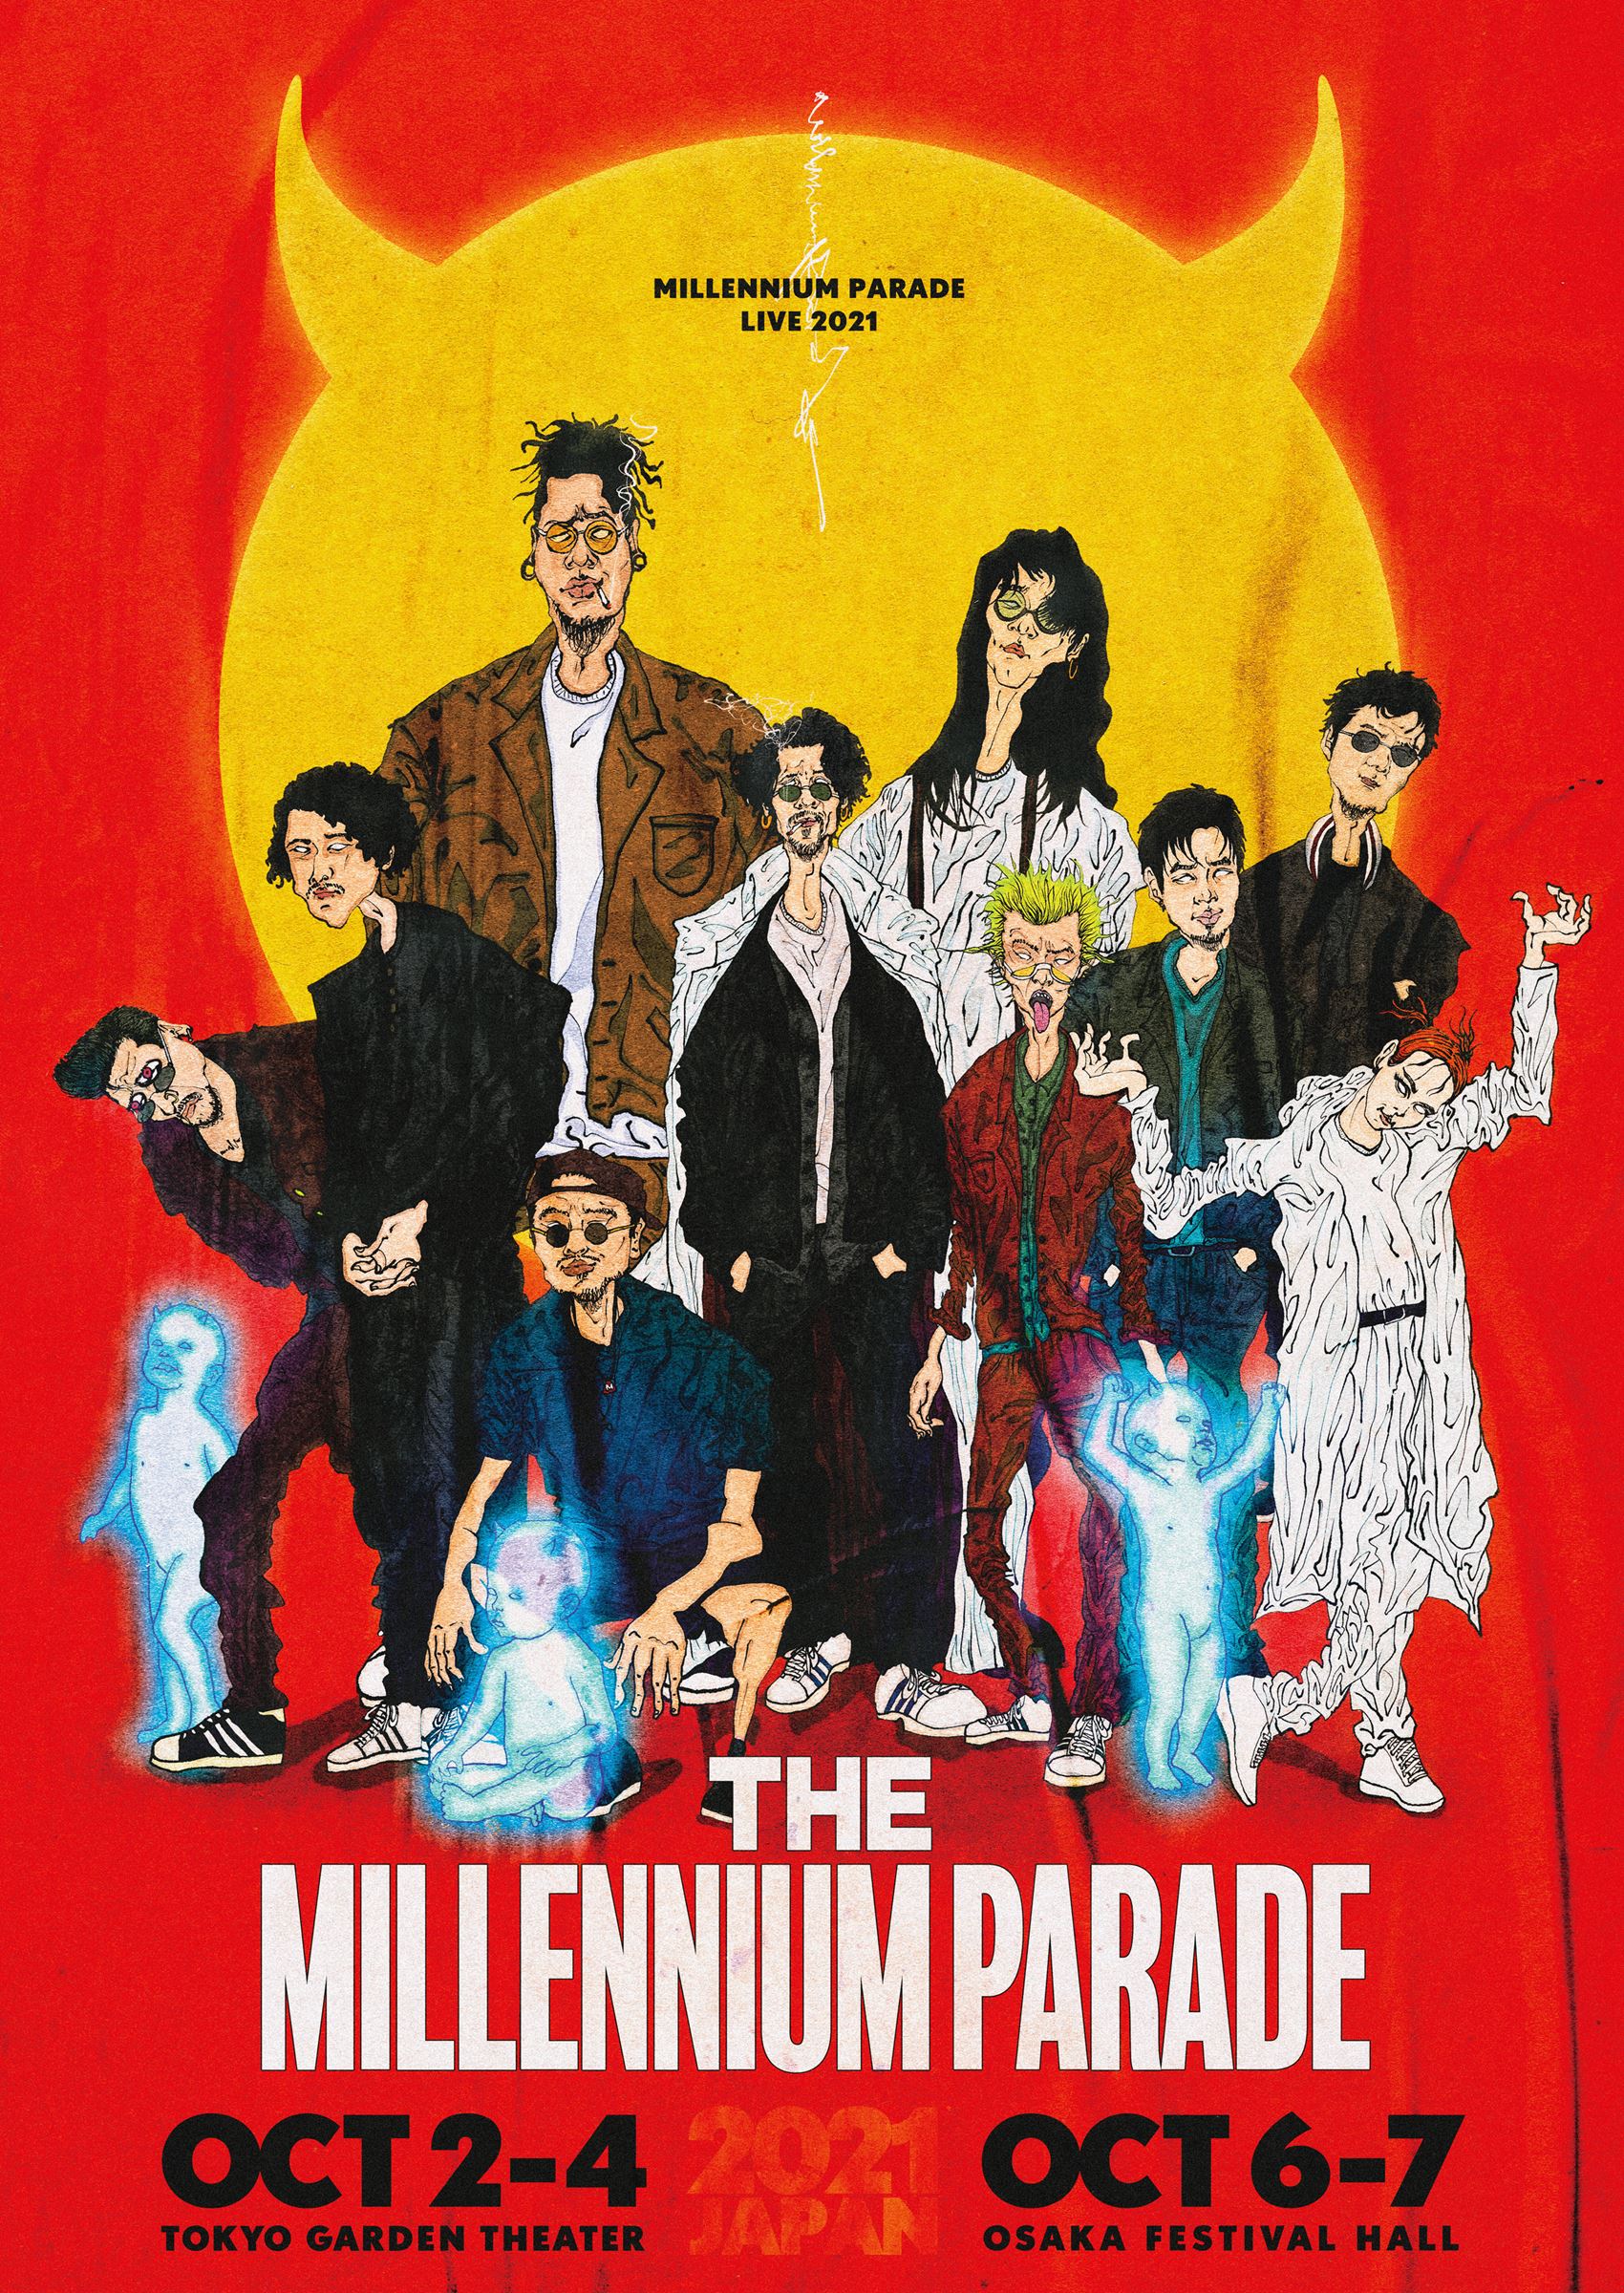 millennium parade Live 2021『THE MILLENNIUM PARADE』告知画像